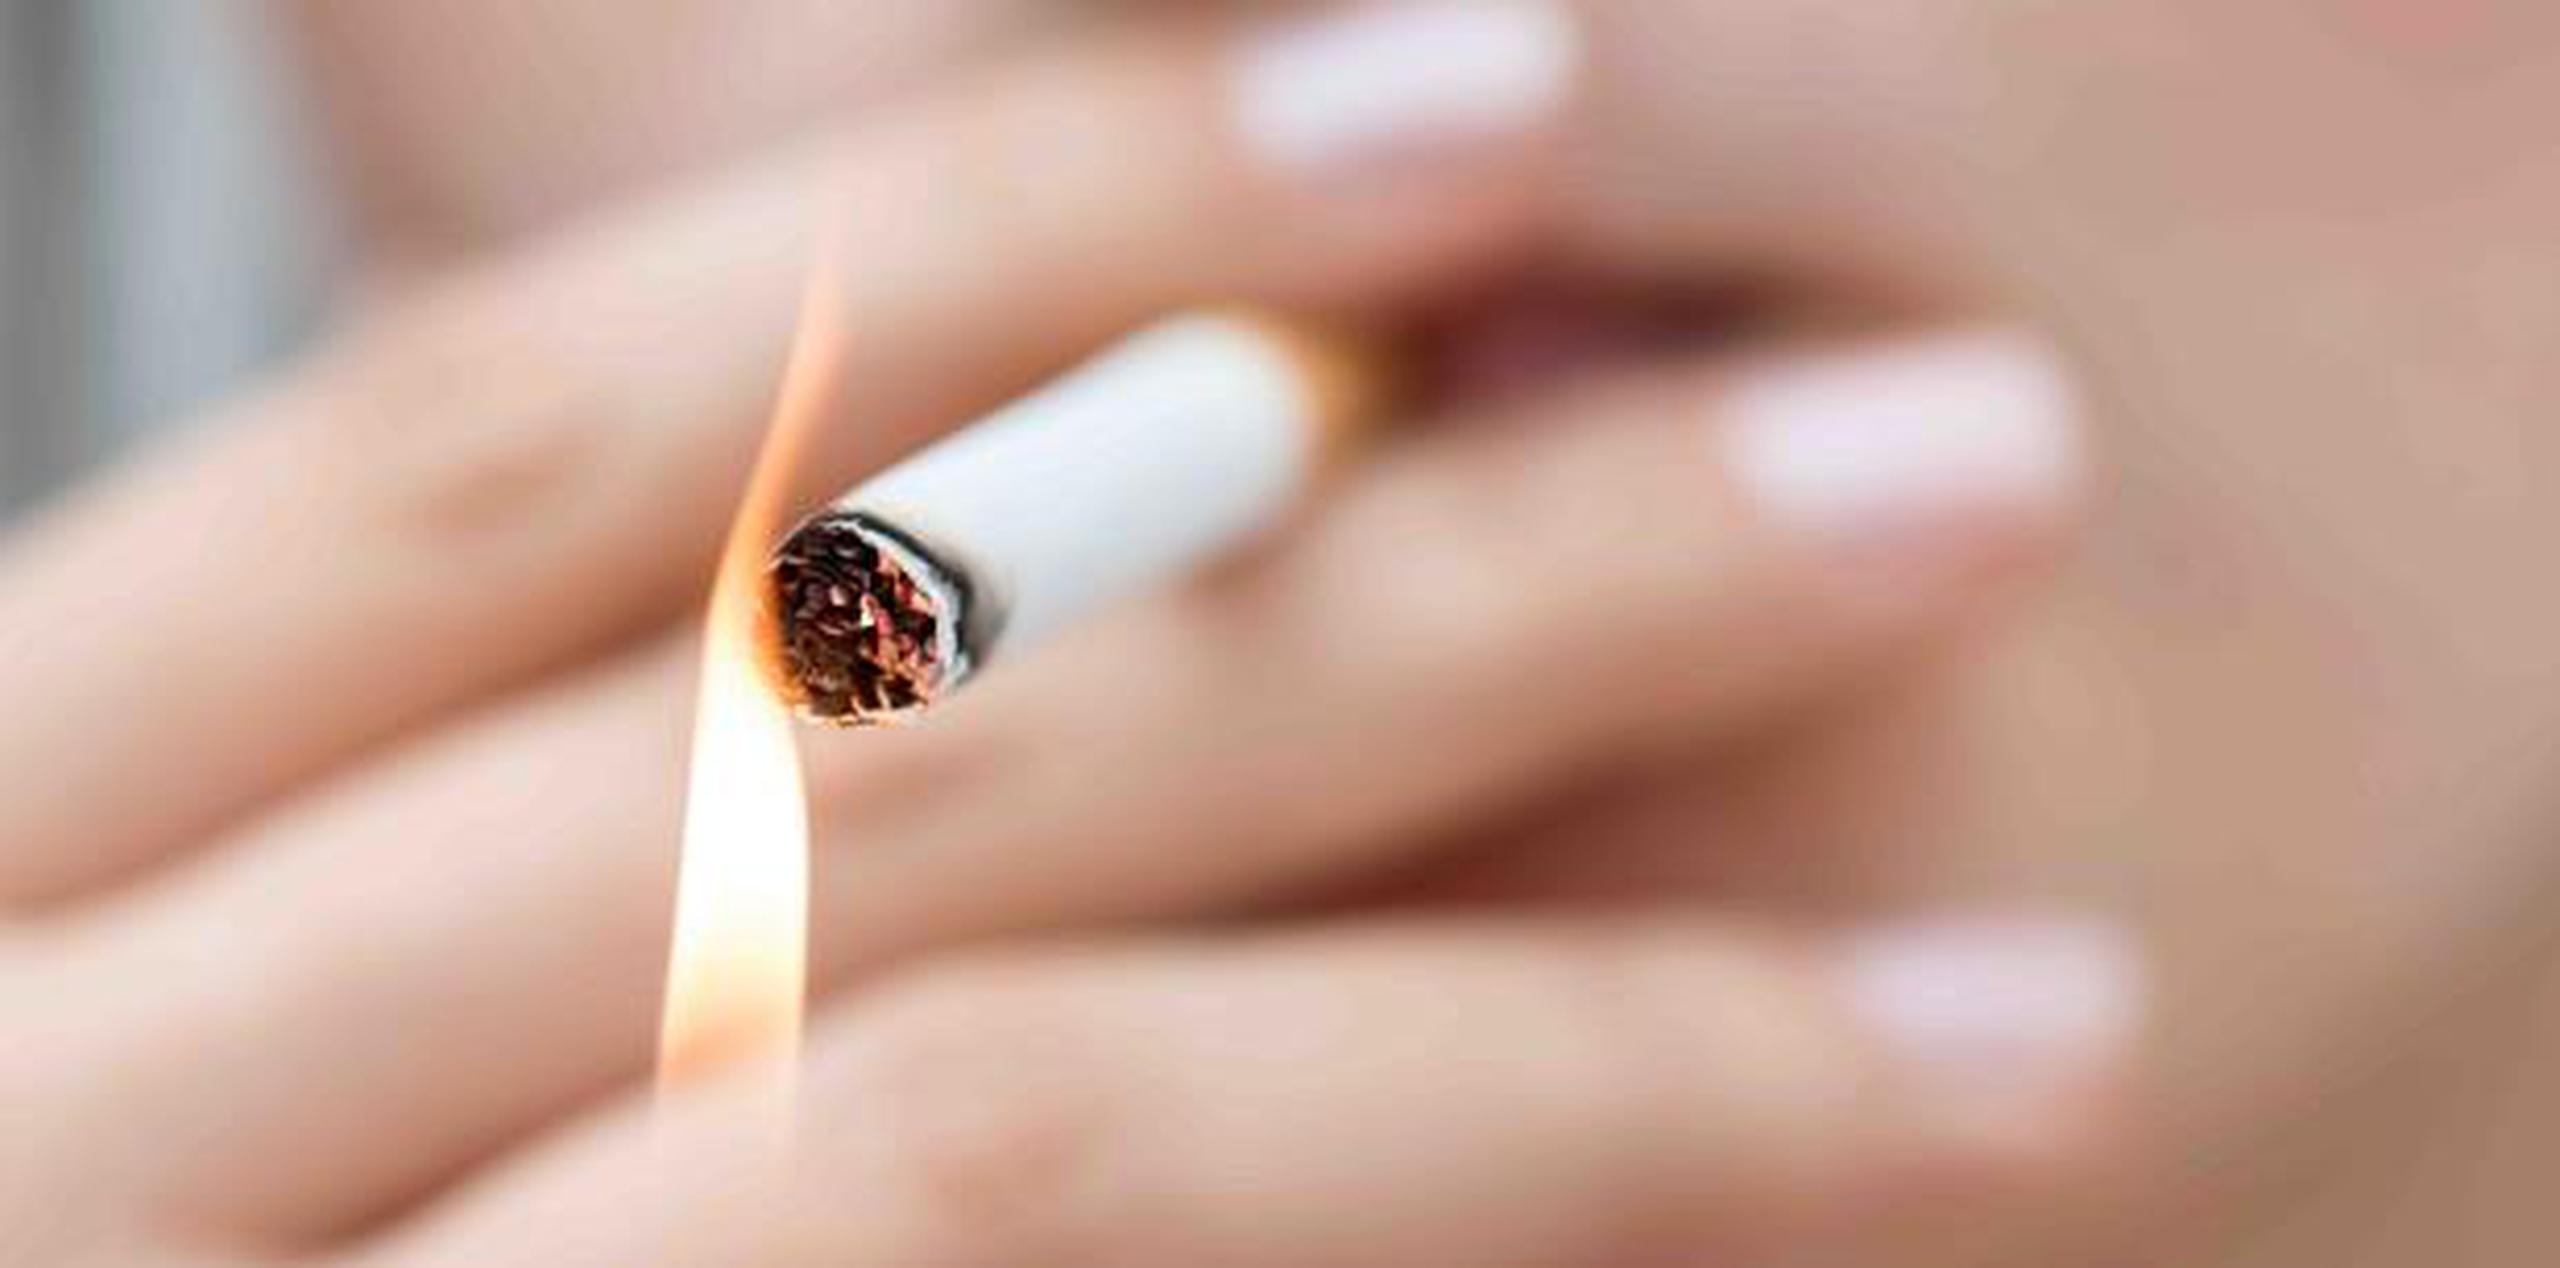 La cajetilla de 20 cigarrillos pasa de 10.50 a los 13.00 dólares. (Shutterstock)